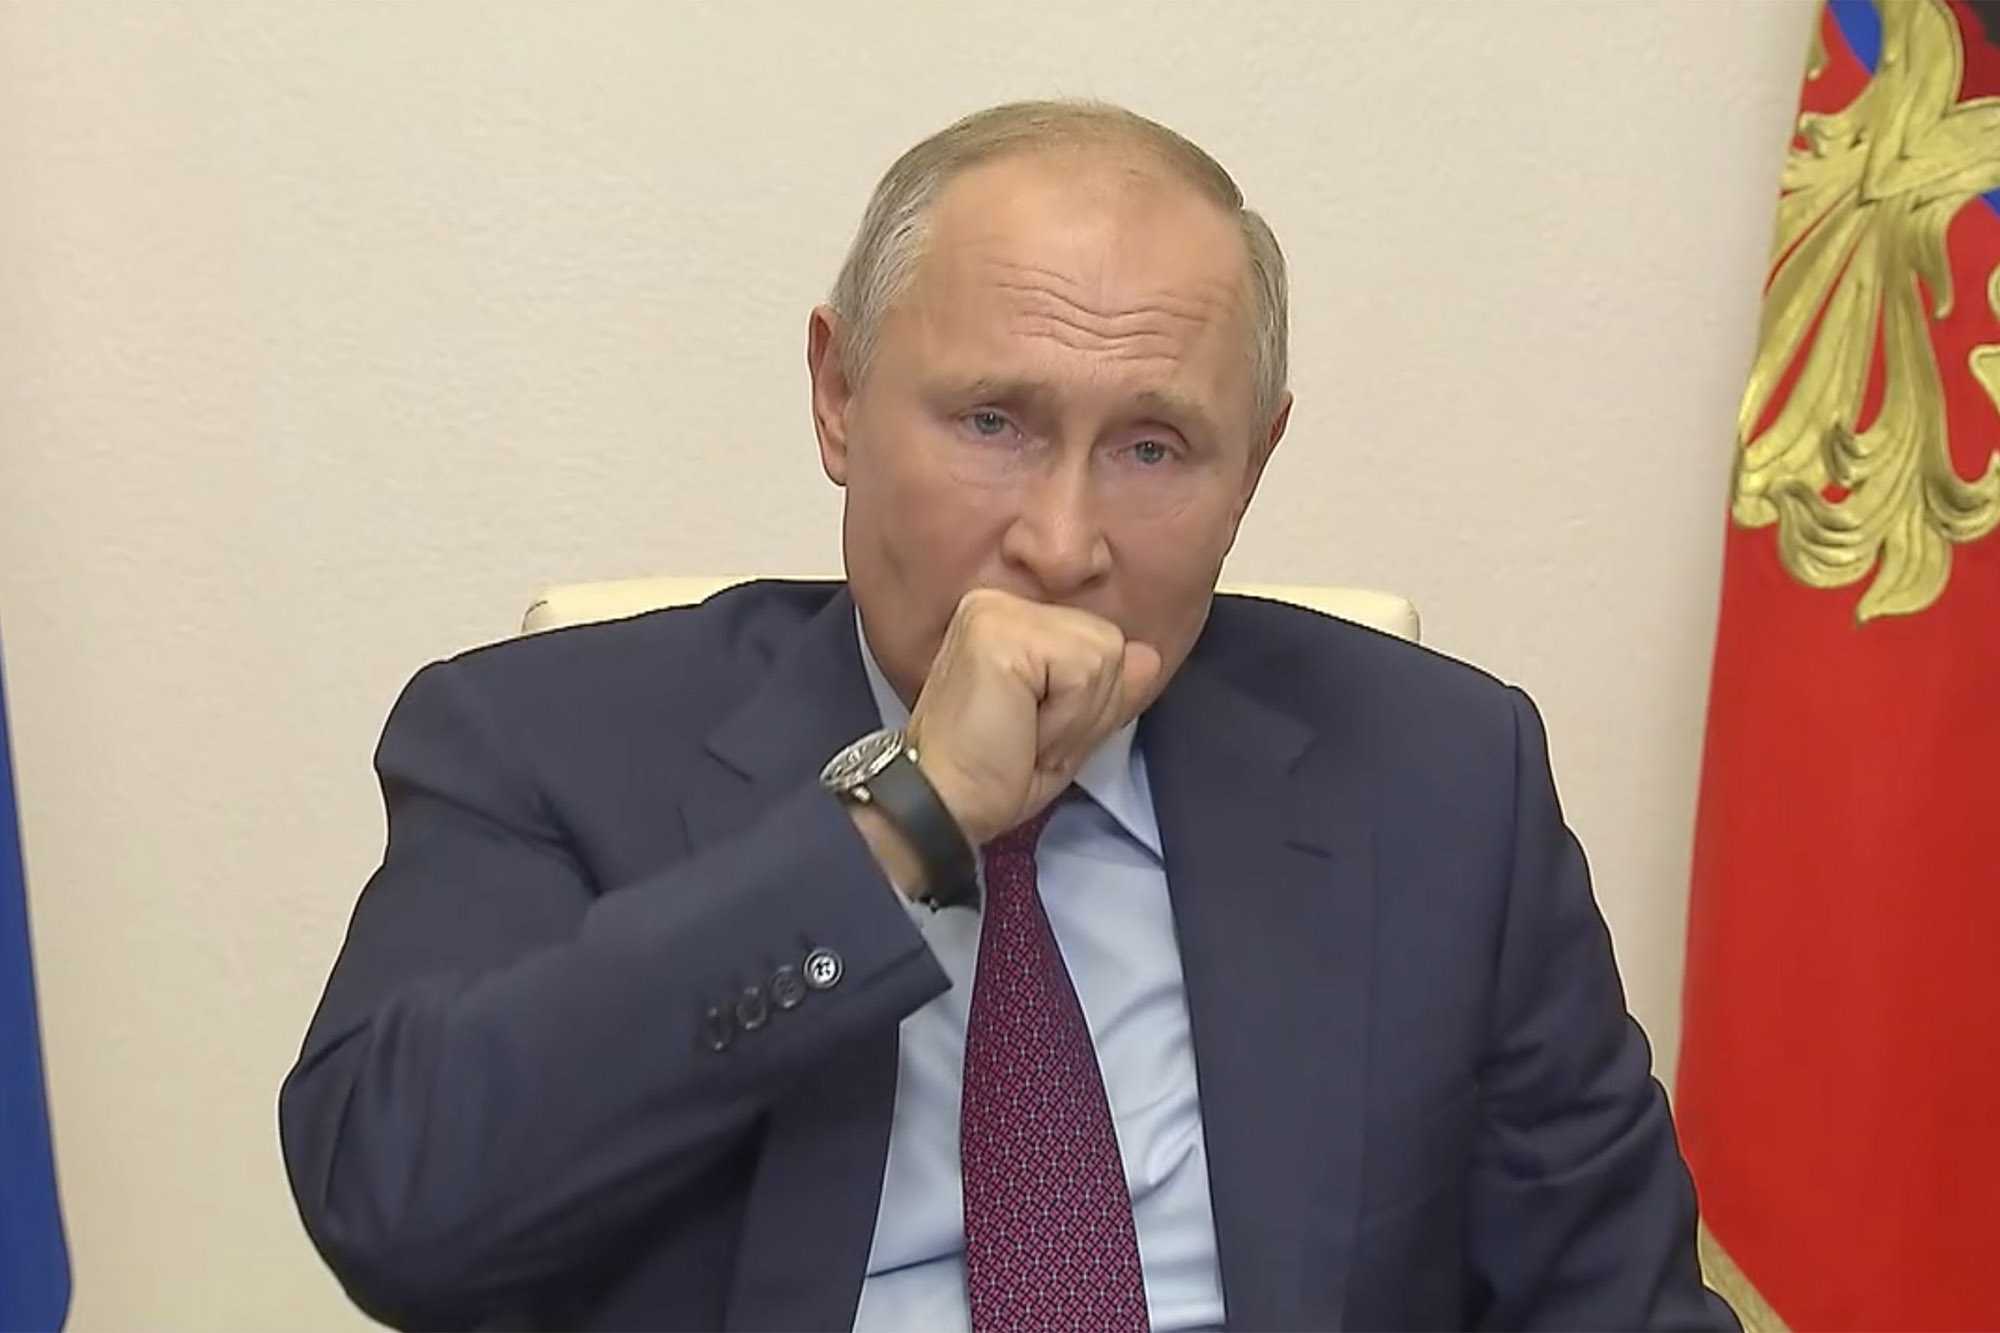 Из-за слуха о болезни Владимира Путина в Сети ищут доказательства, что у него был рак щитовидной железы Смотрят на фото и вспоминают о кашле